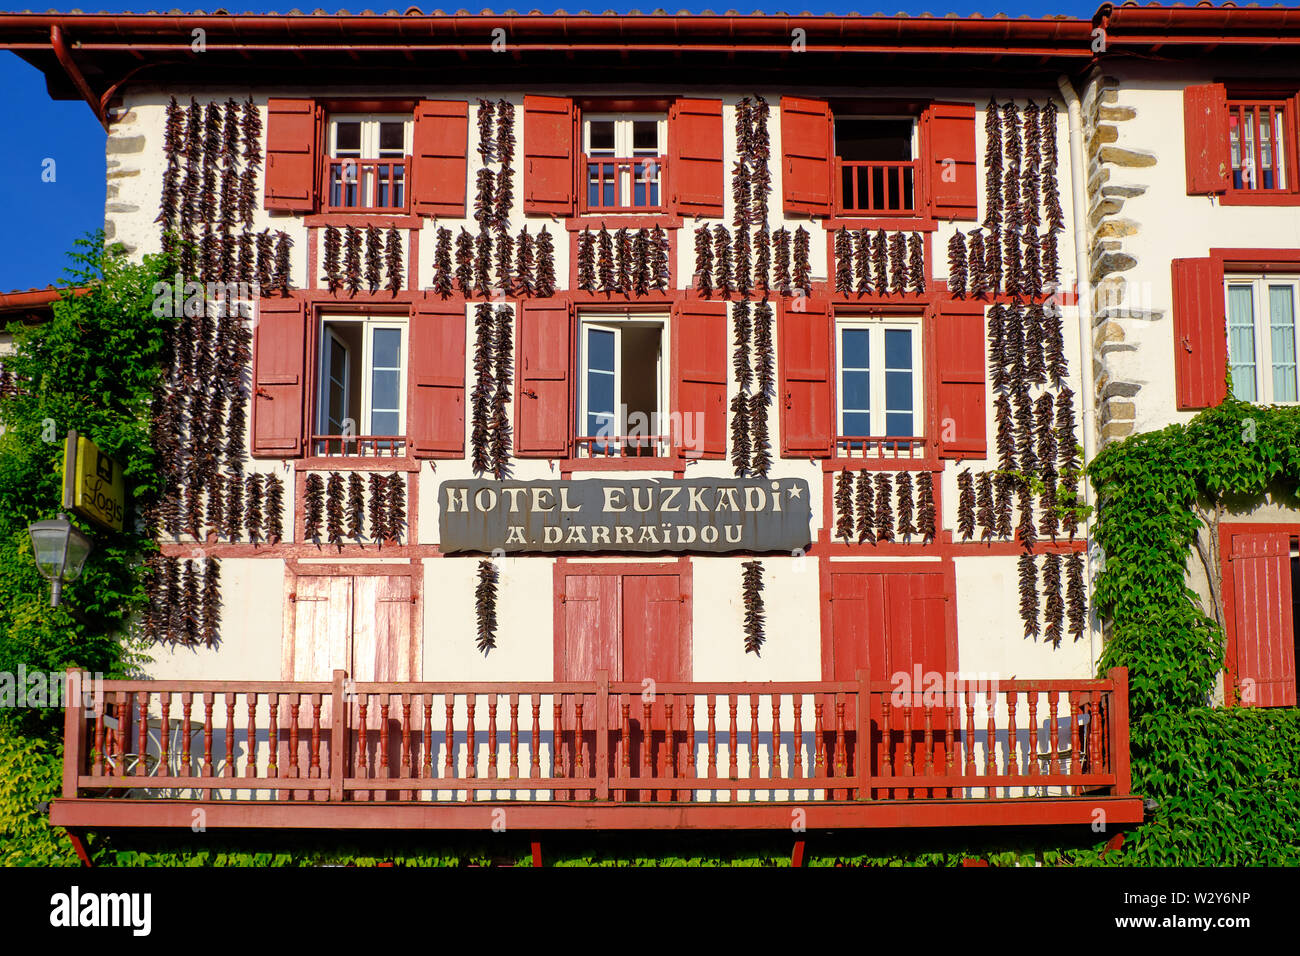 Hotel de Espelette Euzkadi, con la típica arquitectura local vasco y pimientos para secar colgados en la fachada. Espelette, Francia Foto de stock